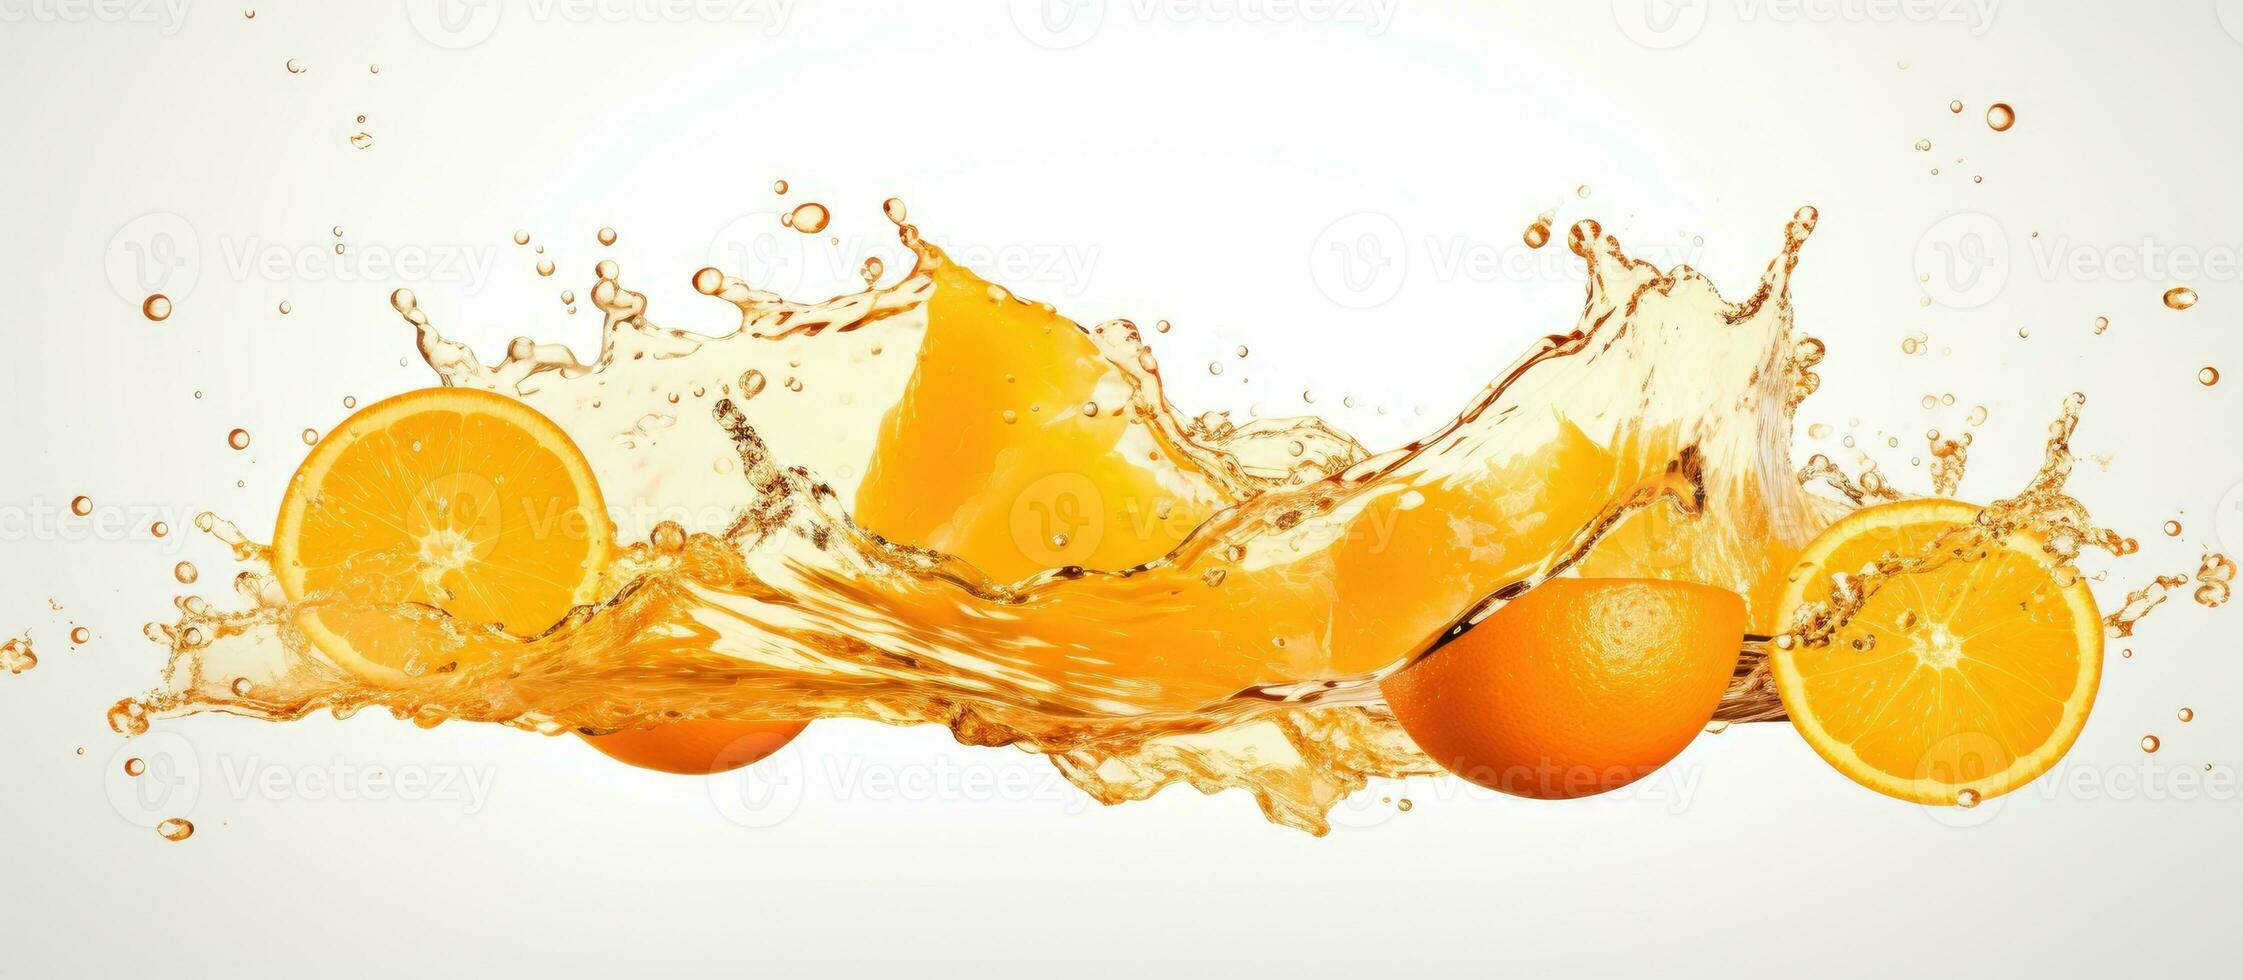 Half of a ripe orange fruit with orange juice splash water isolated on white background photo